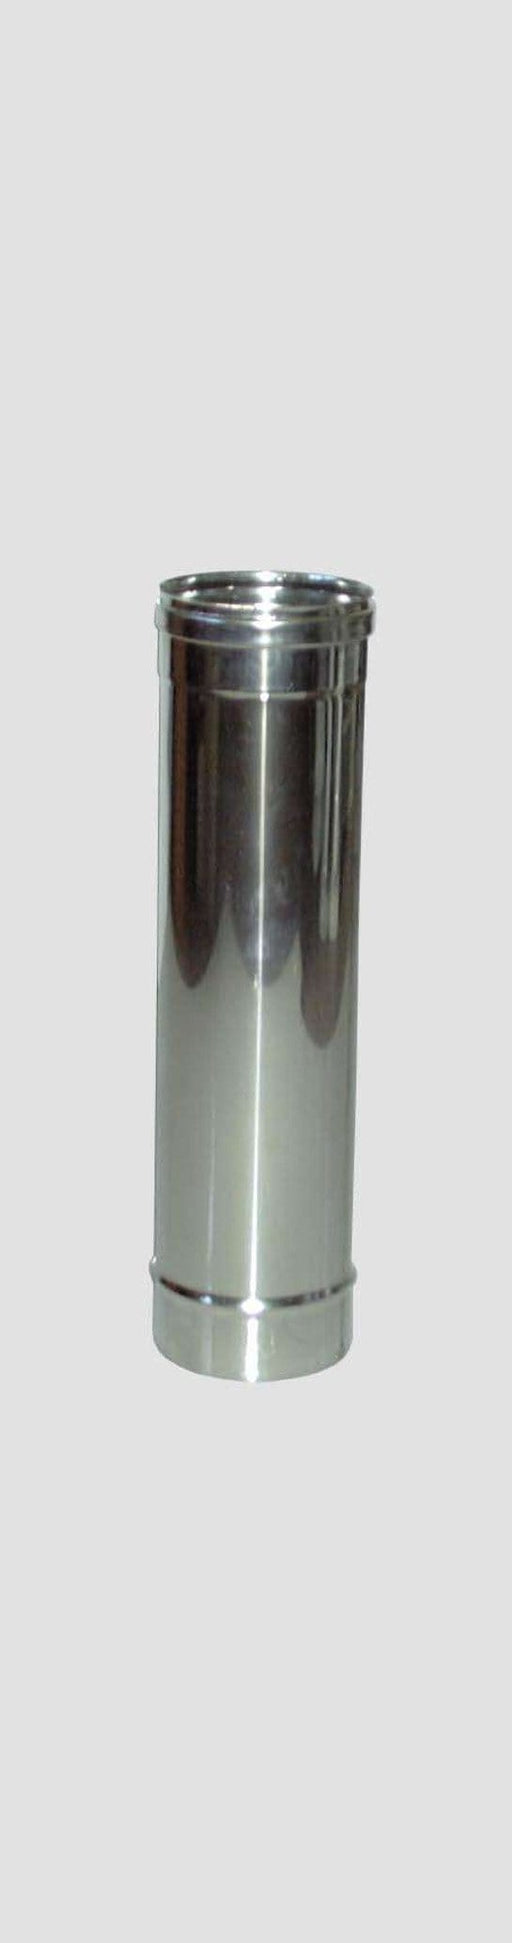 Tubo Diritto Inox AISI 304 per Stufe - Altezza 50 cm - Diametro 10 cm MillStore (2499316)